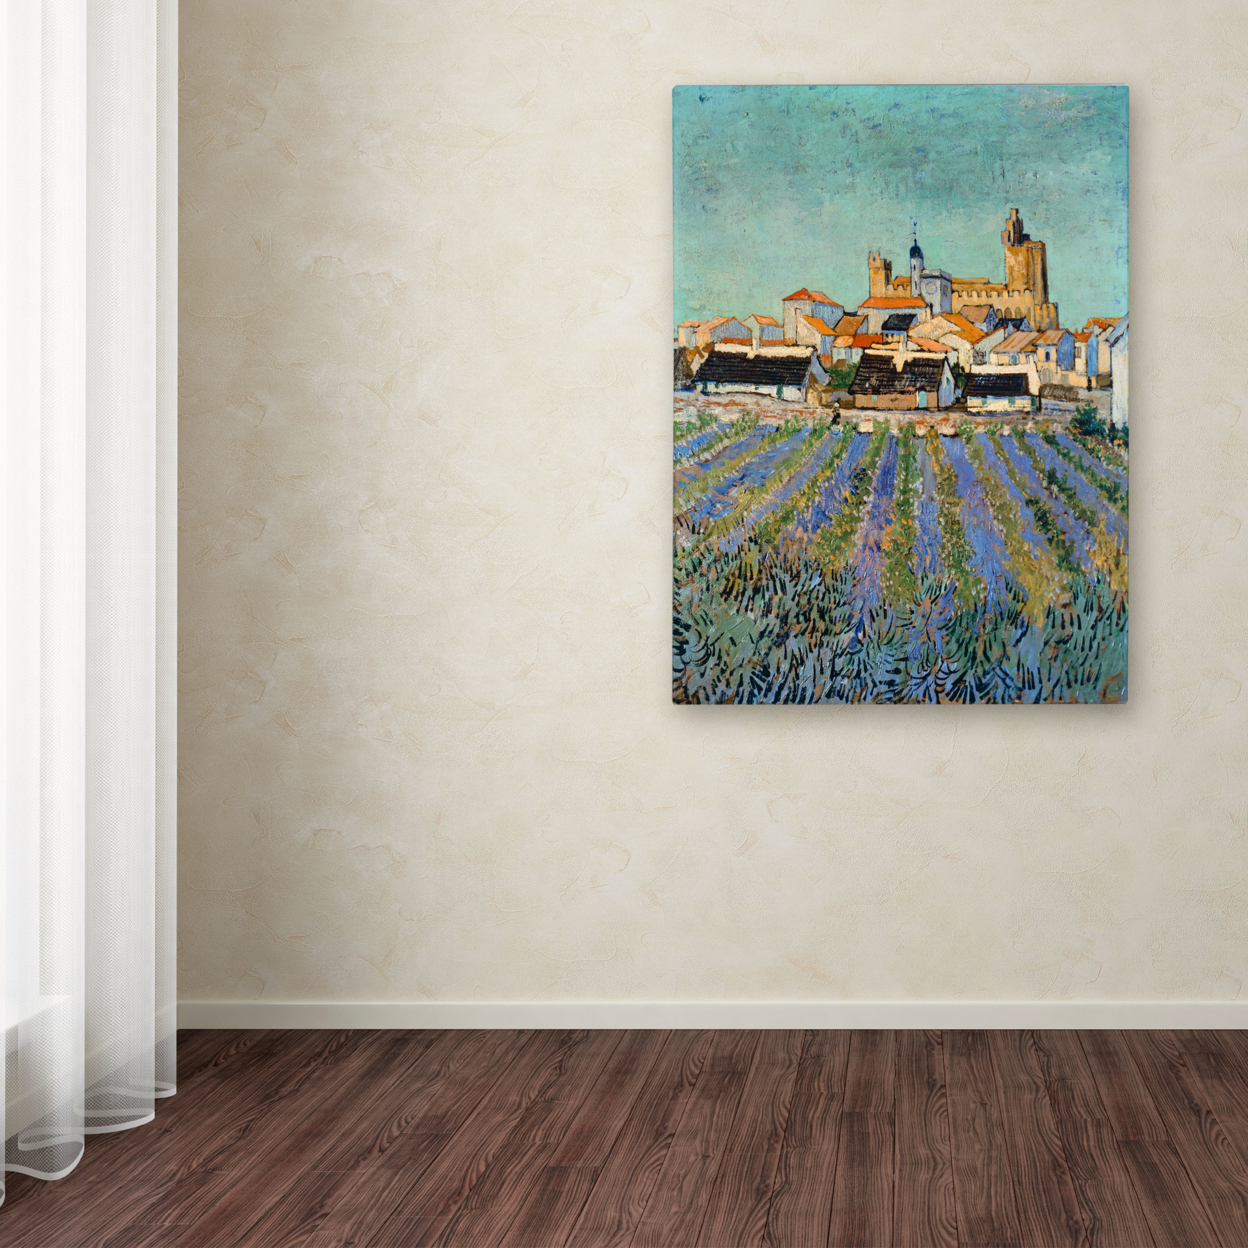 Vincent Van Gogh 'Saintes Maries De La Mer' Canvas Wall Art 35 X 47 Inches